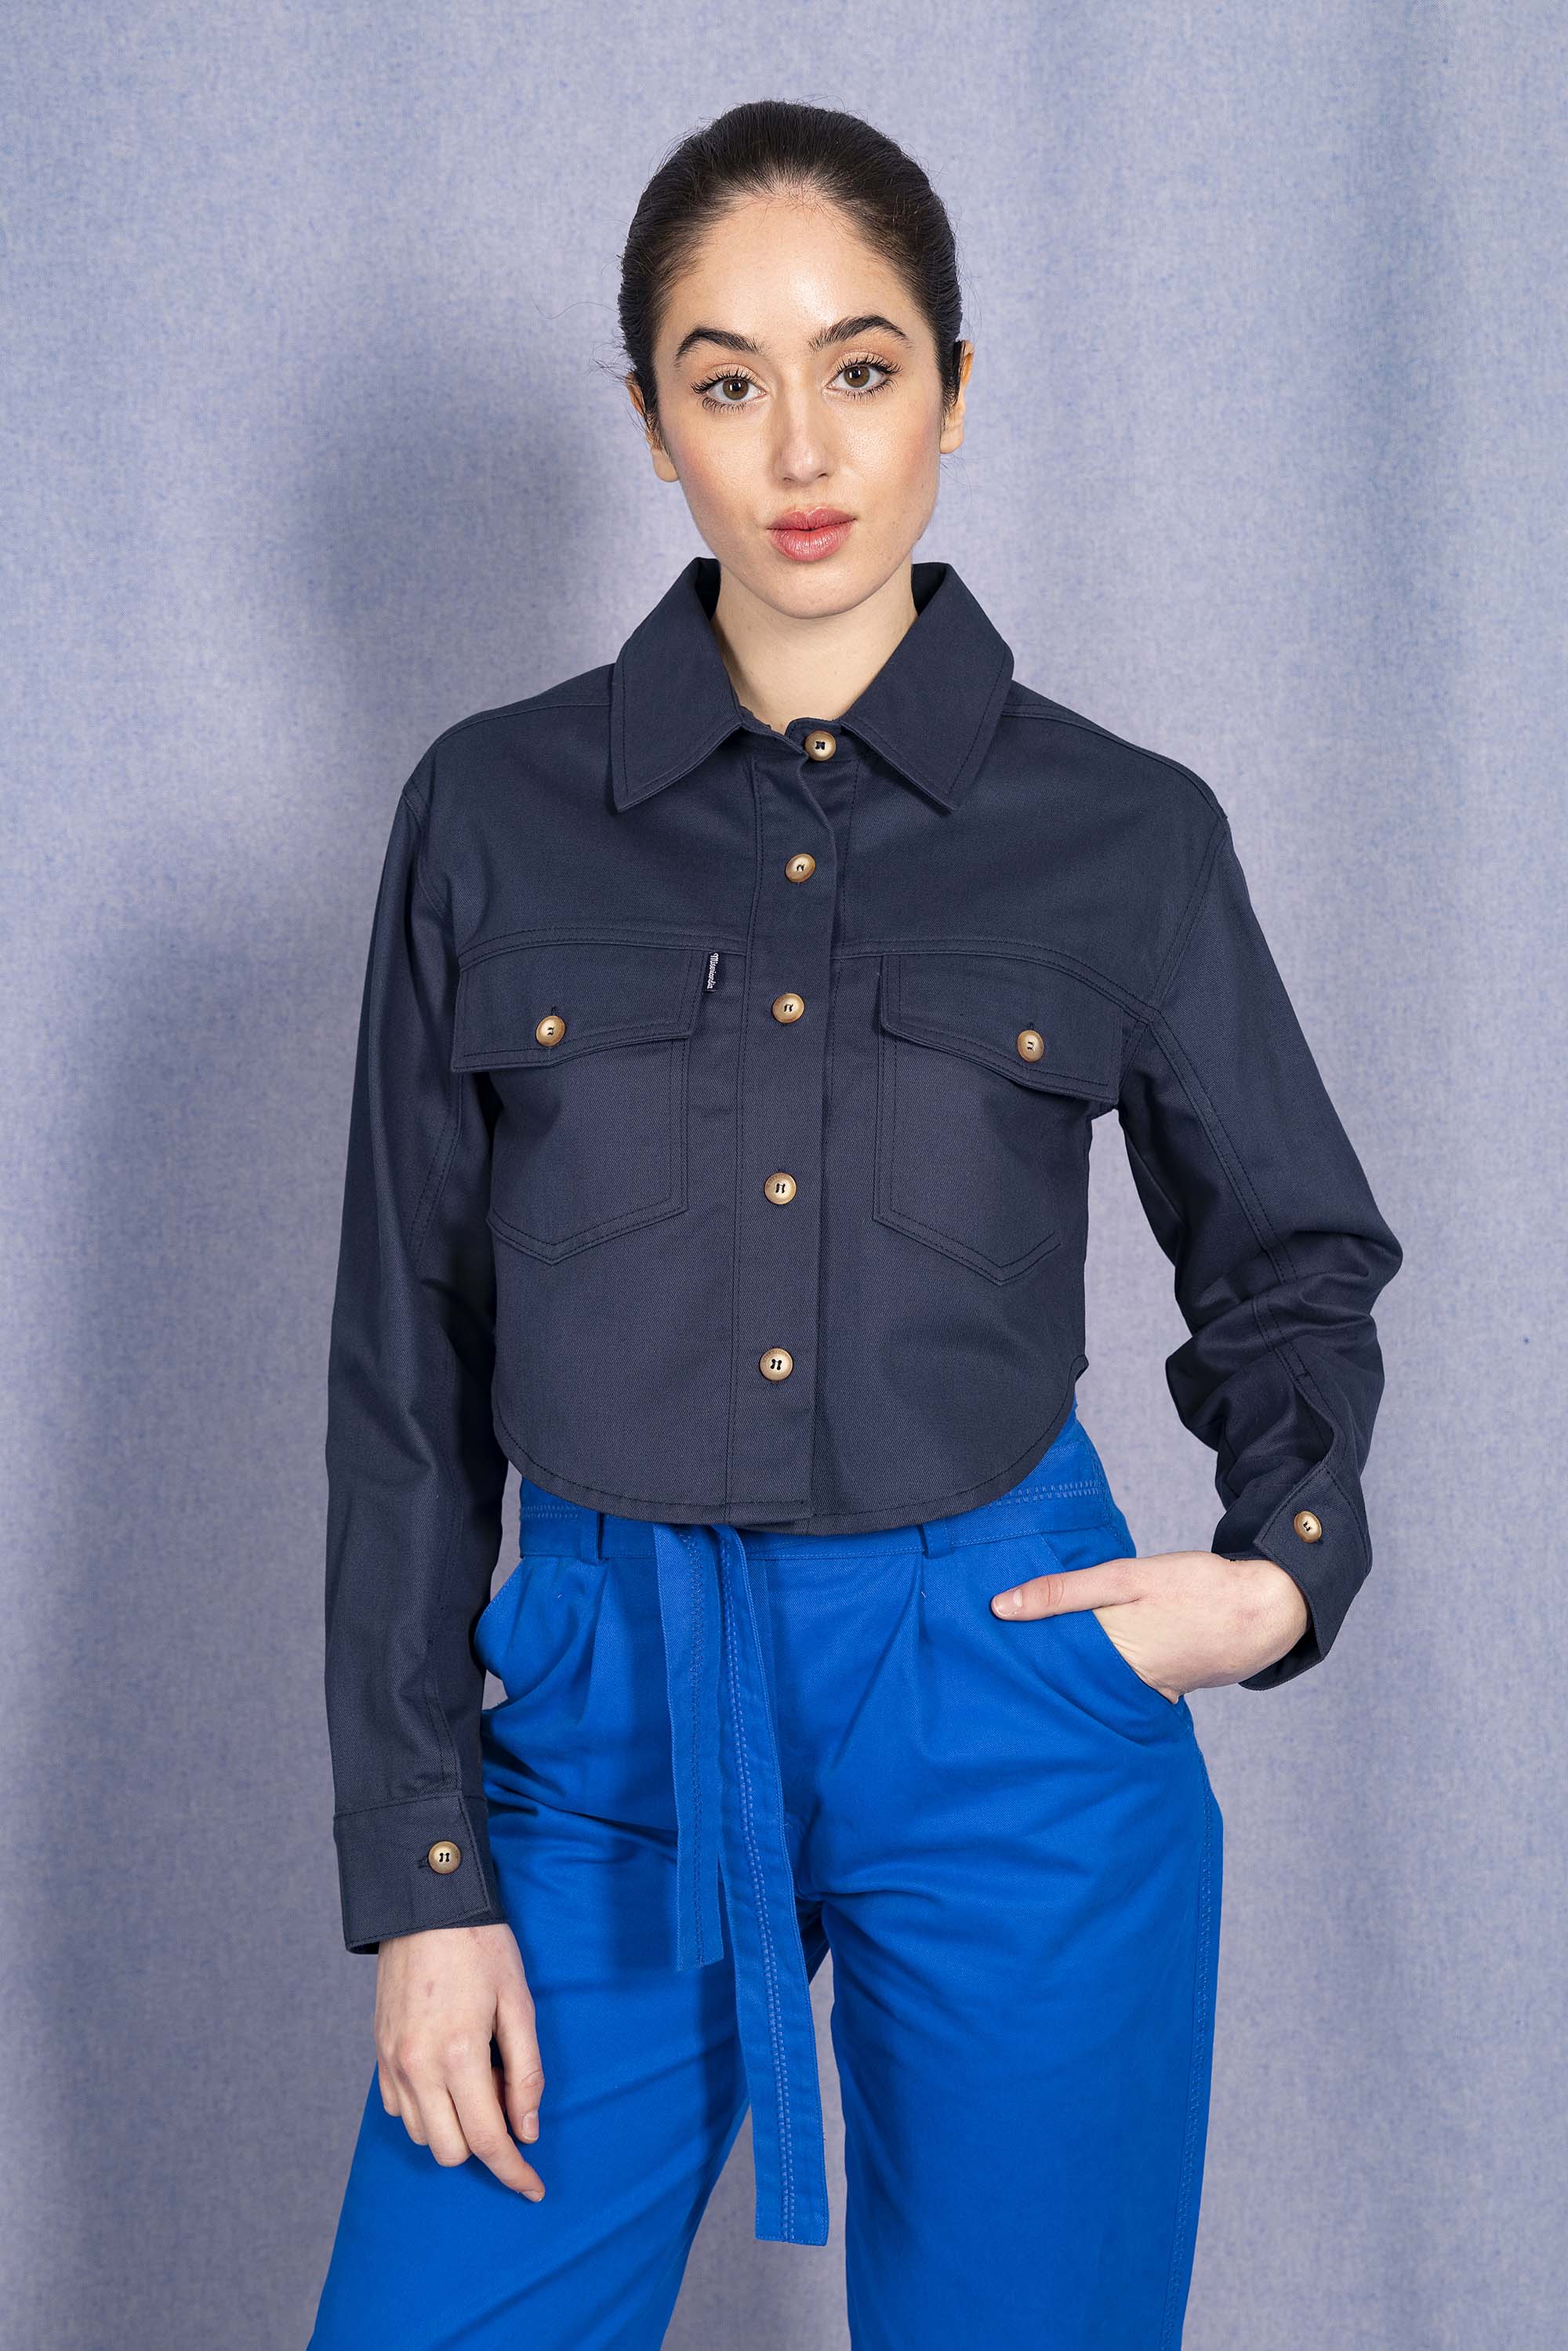 Chemise Arlet Bleu Marine classique intemporelle, la chemise dessine la silhouette